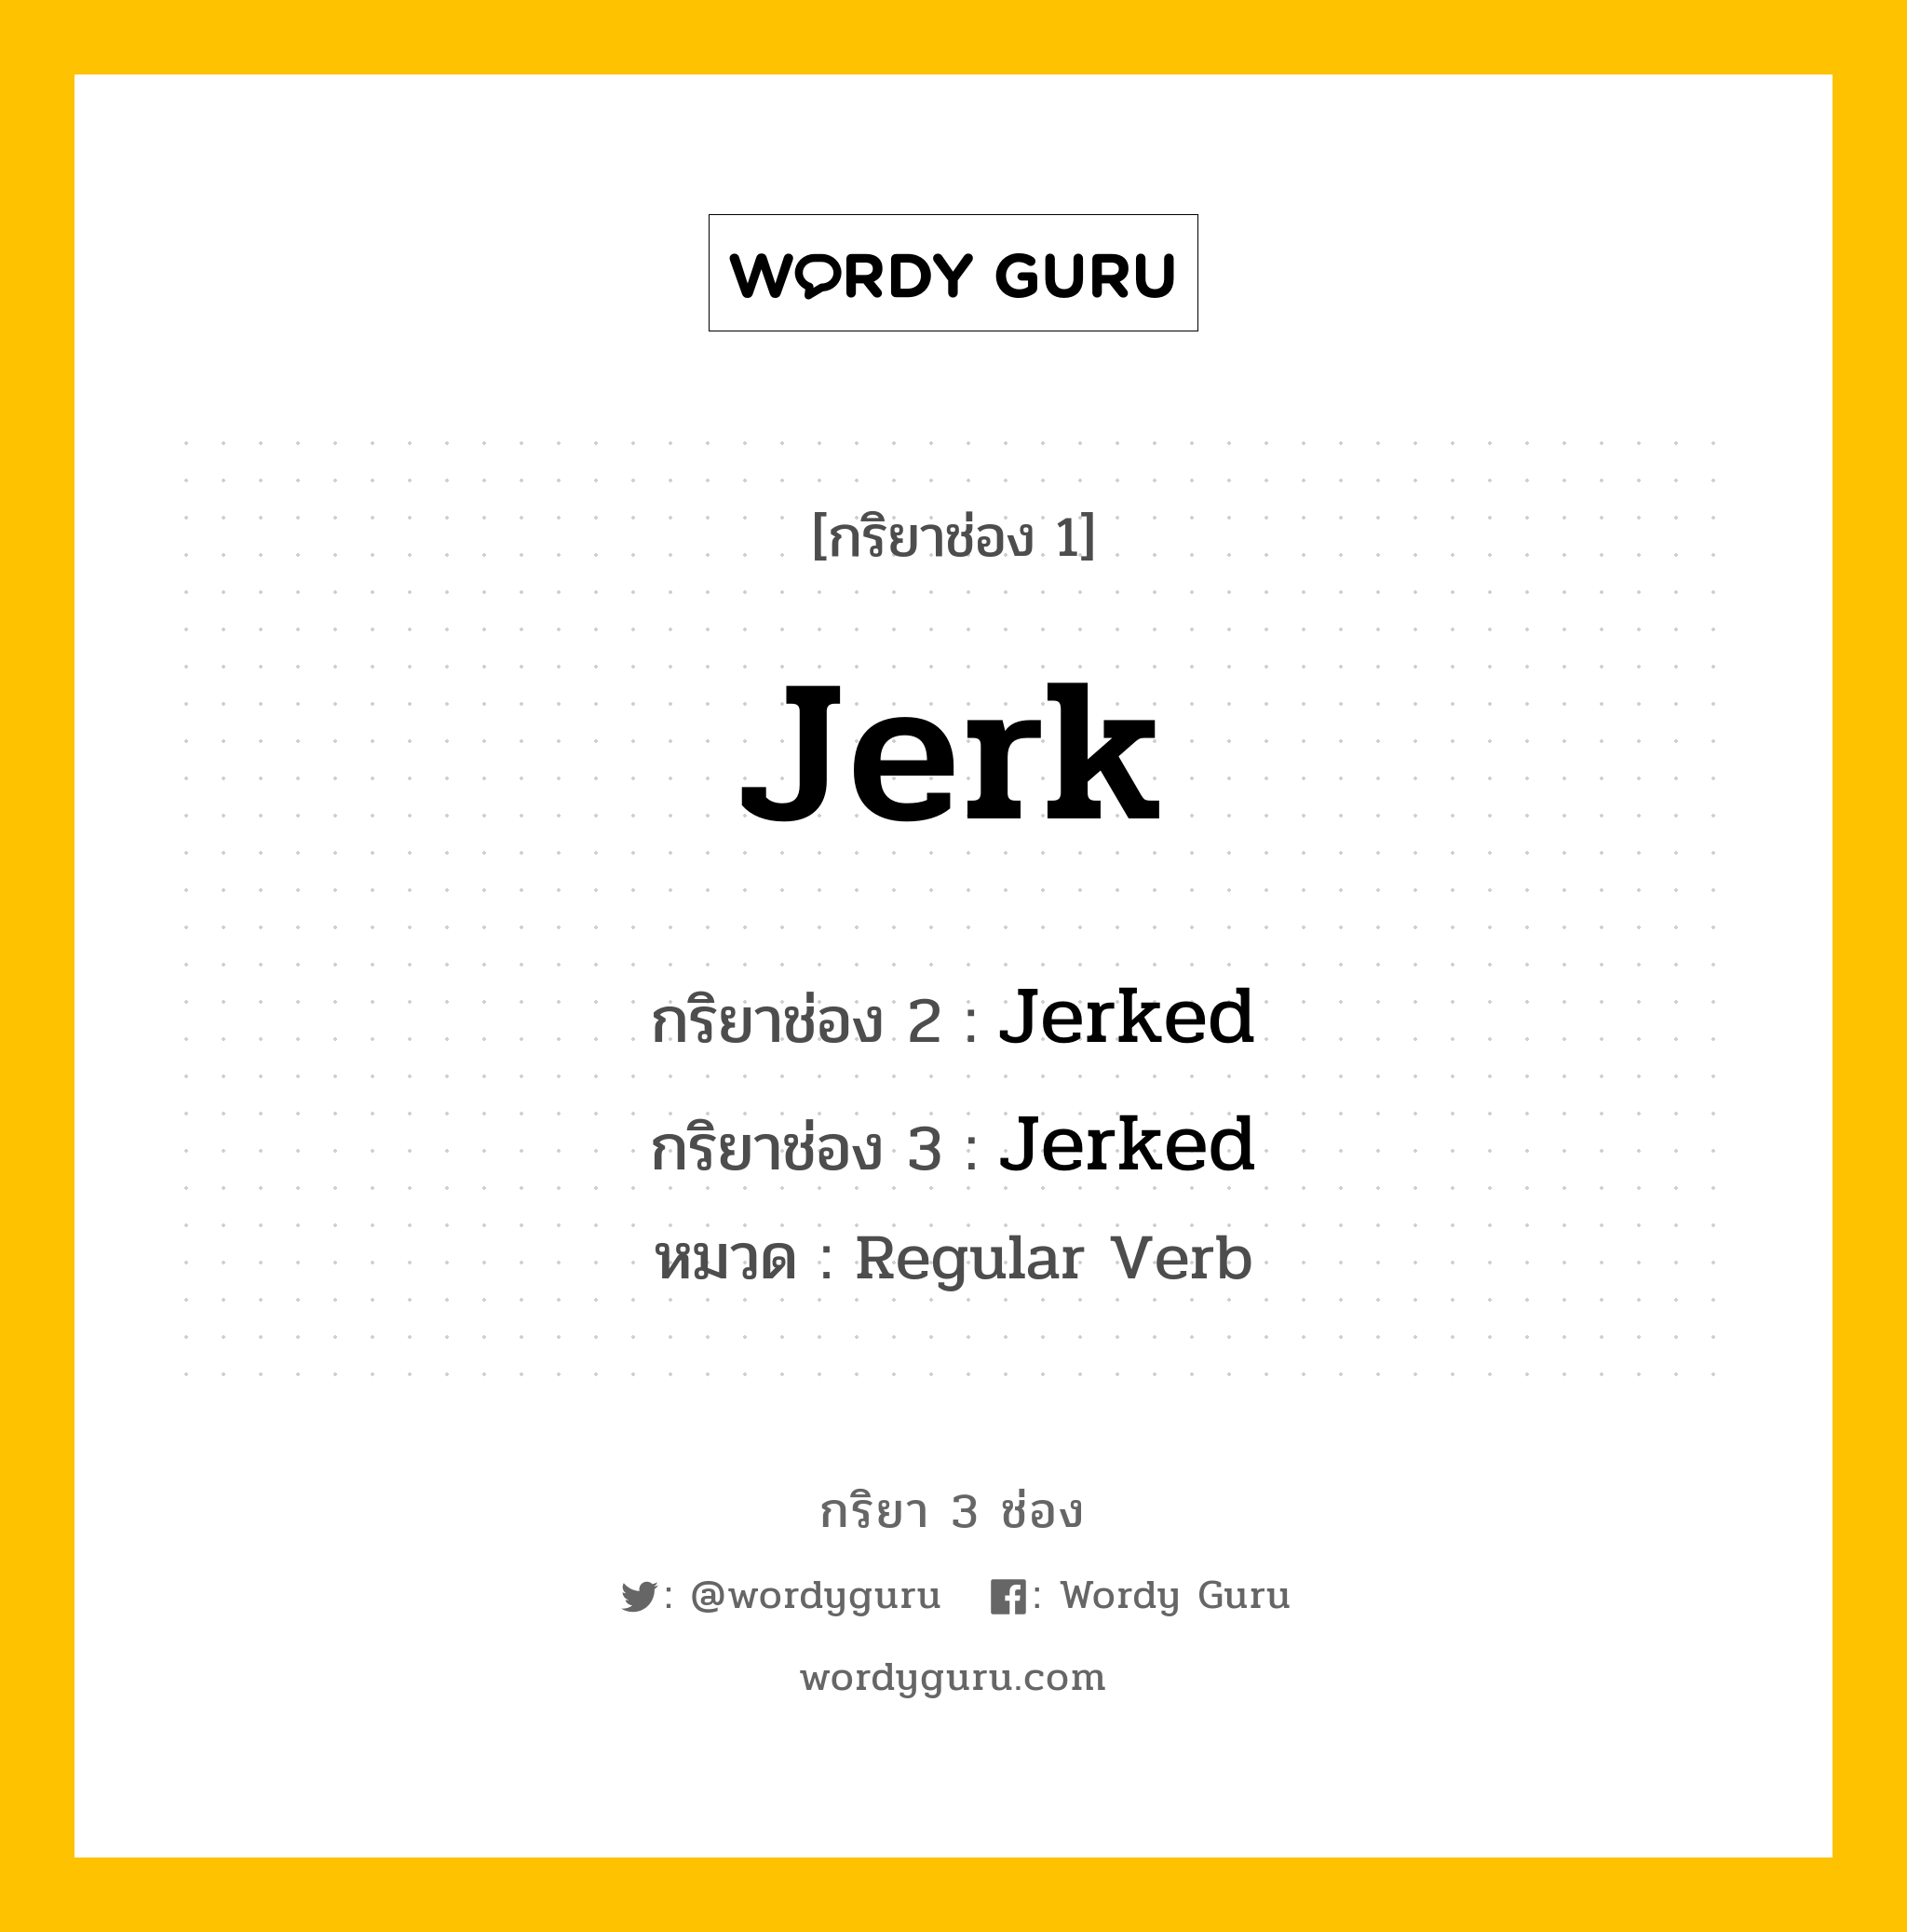 กริยา 3 ช่อง: Jerk ช่อง 2 Jerk ช่อง 3 คืออะไร, กริยาช่อง 1 Jerk กริยาช่อง 2 Jerked กริยาช่อง 3 Jerked หมวด Regular Verb หมวด Regular Verb